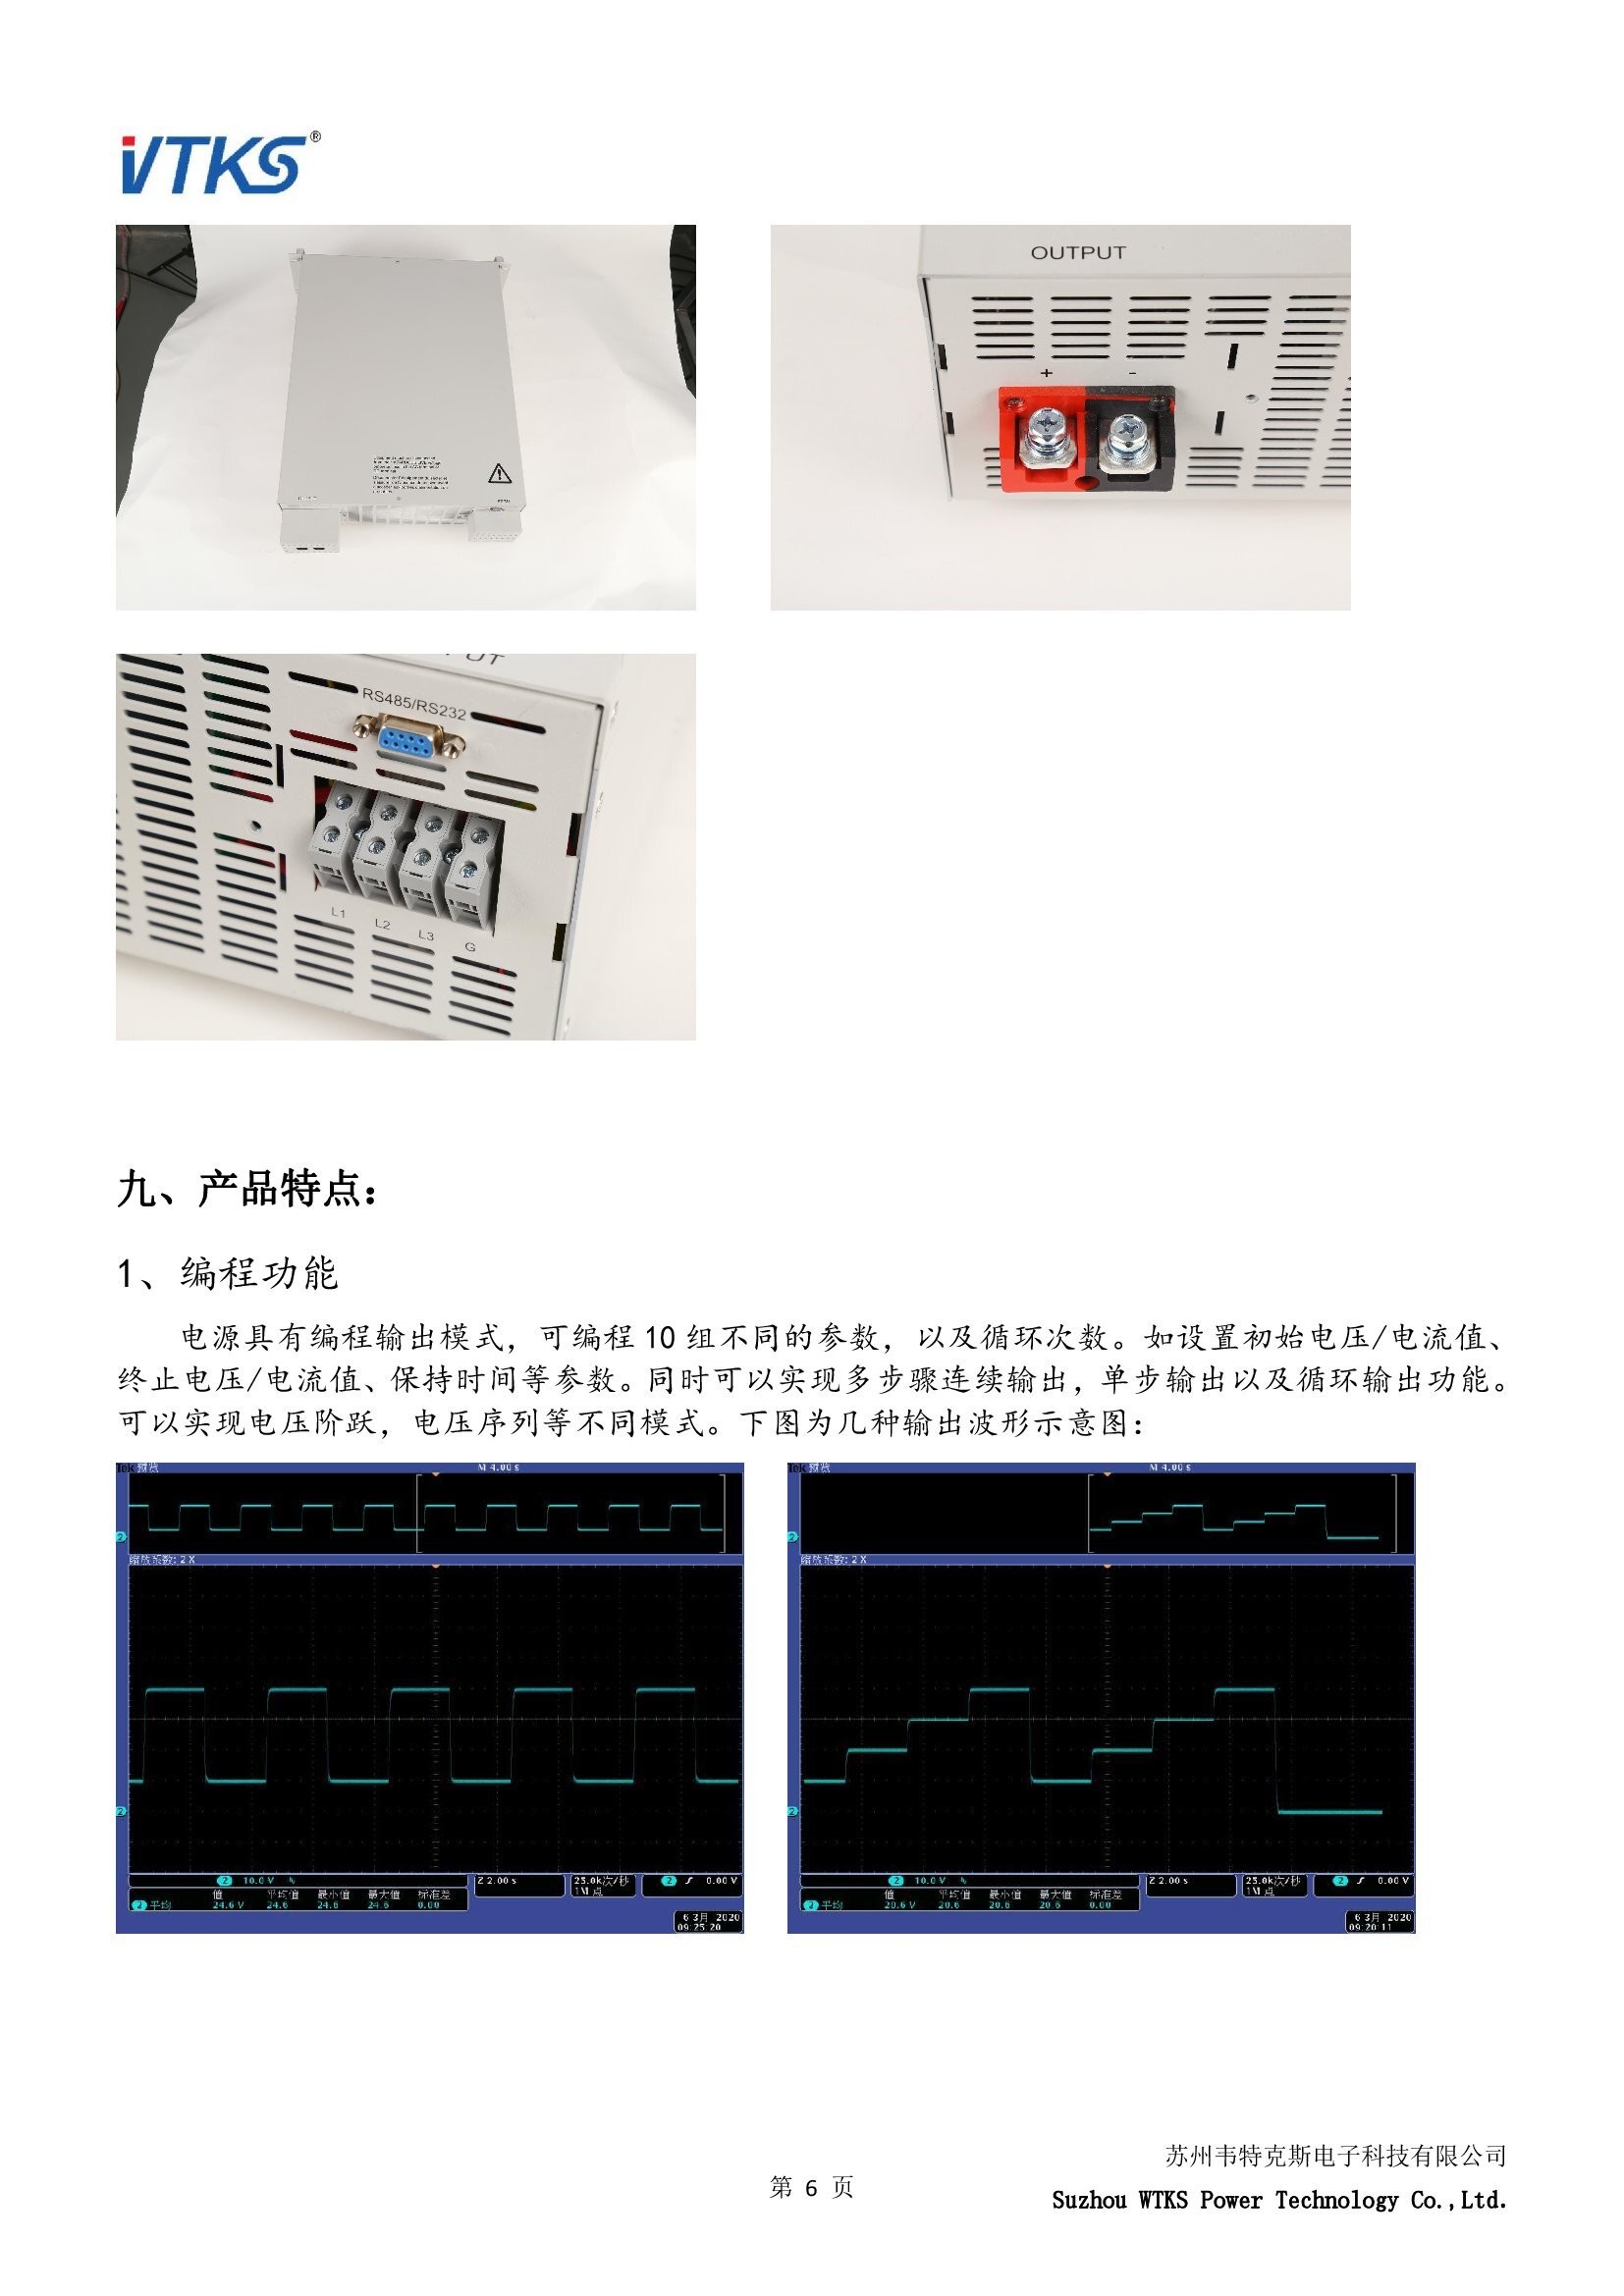 WSD-10KW系列数字直流电源技术资料_V1.06_00006.jpg